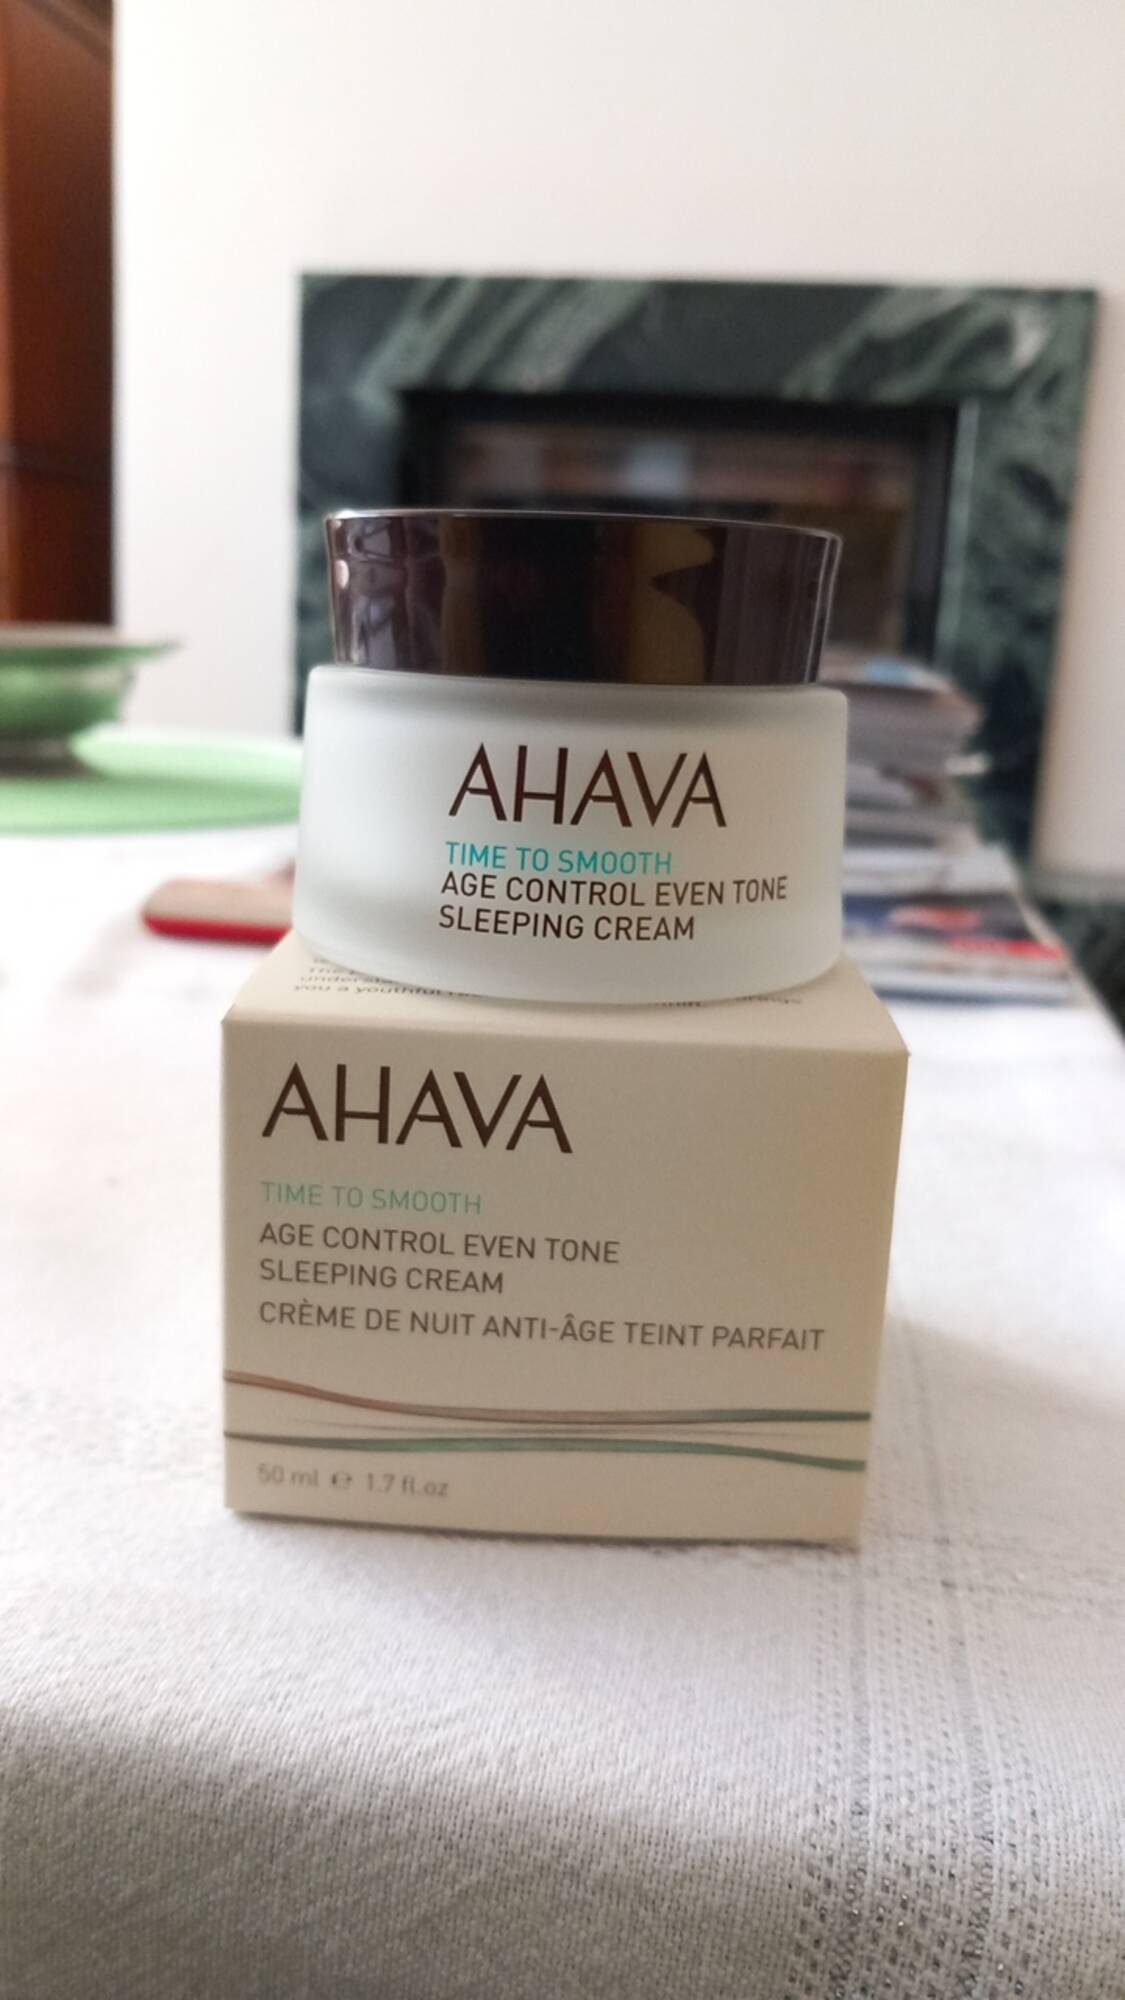 AHAVA - Crème de nuit anti-âge teint parfait. 